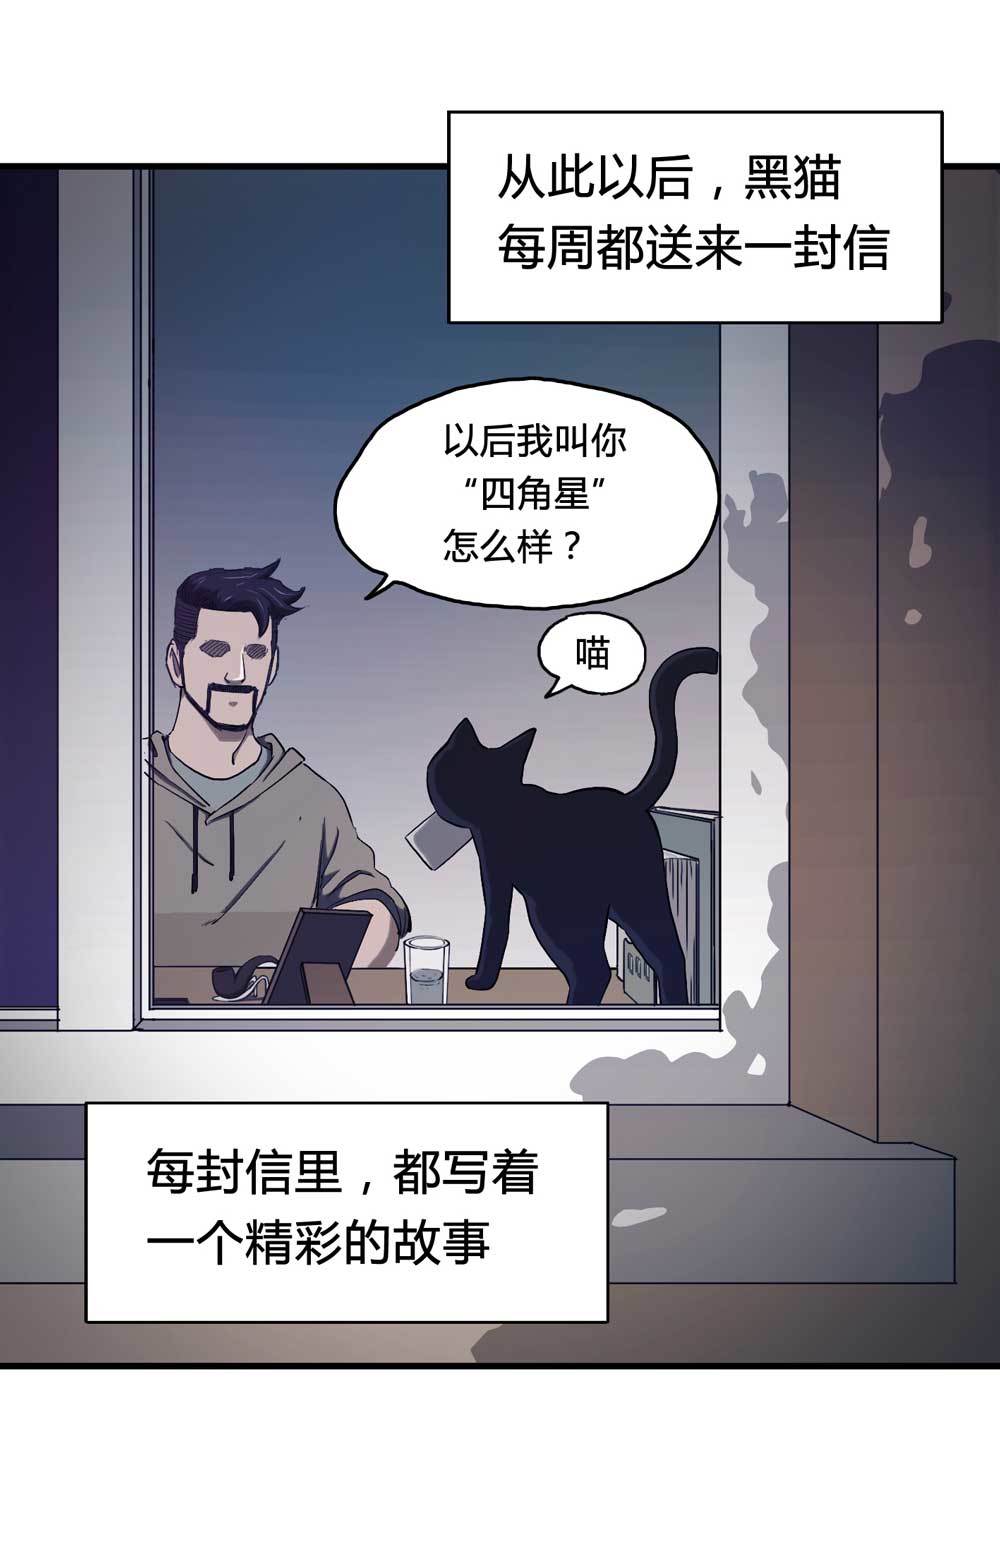 懸疑貓——大叔深夜故事集 - 000-序篇 - 2